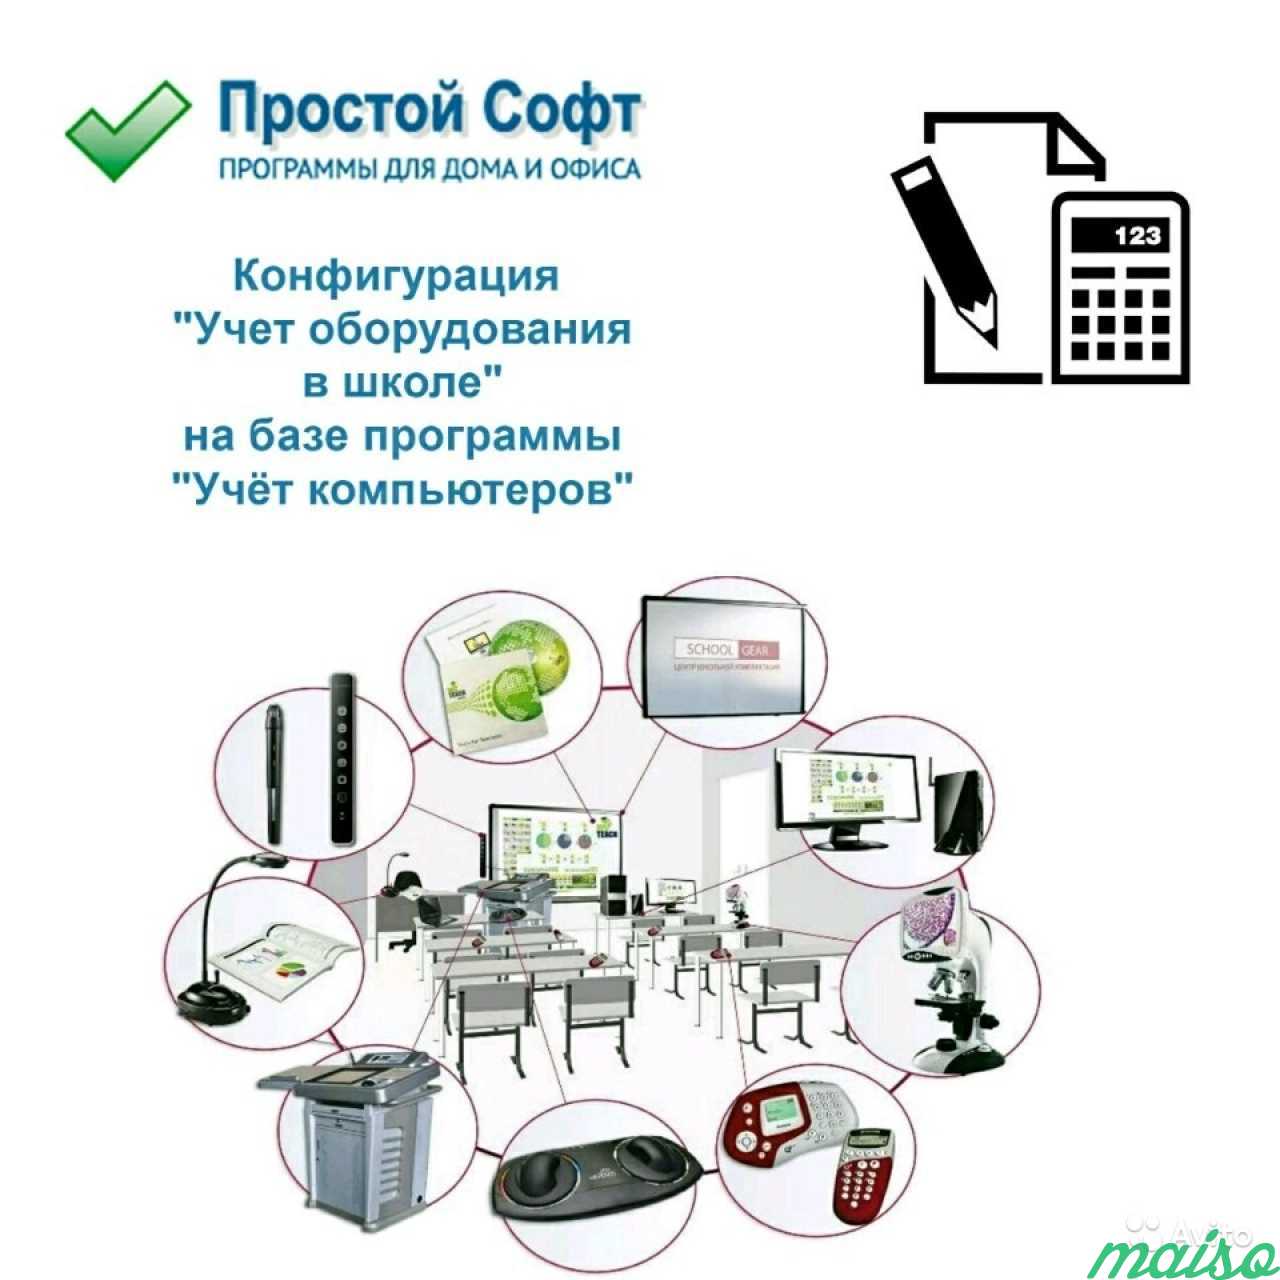 Конфигурация Учёт оборудования в школе в Санкт-Петербурге. Фото 1